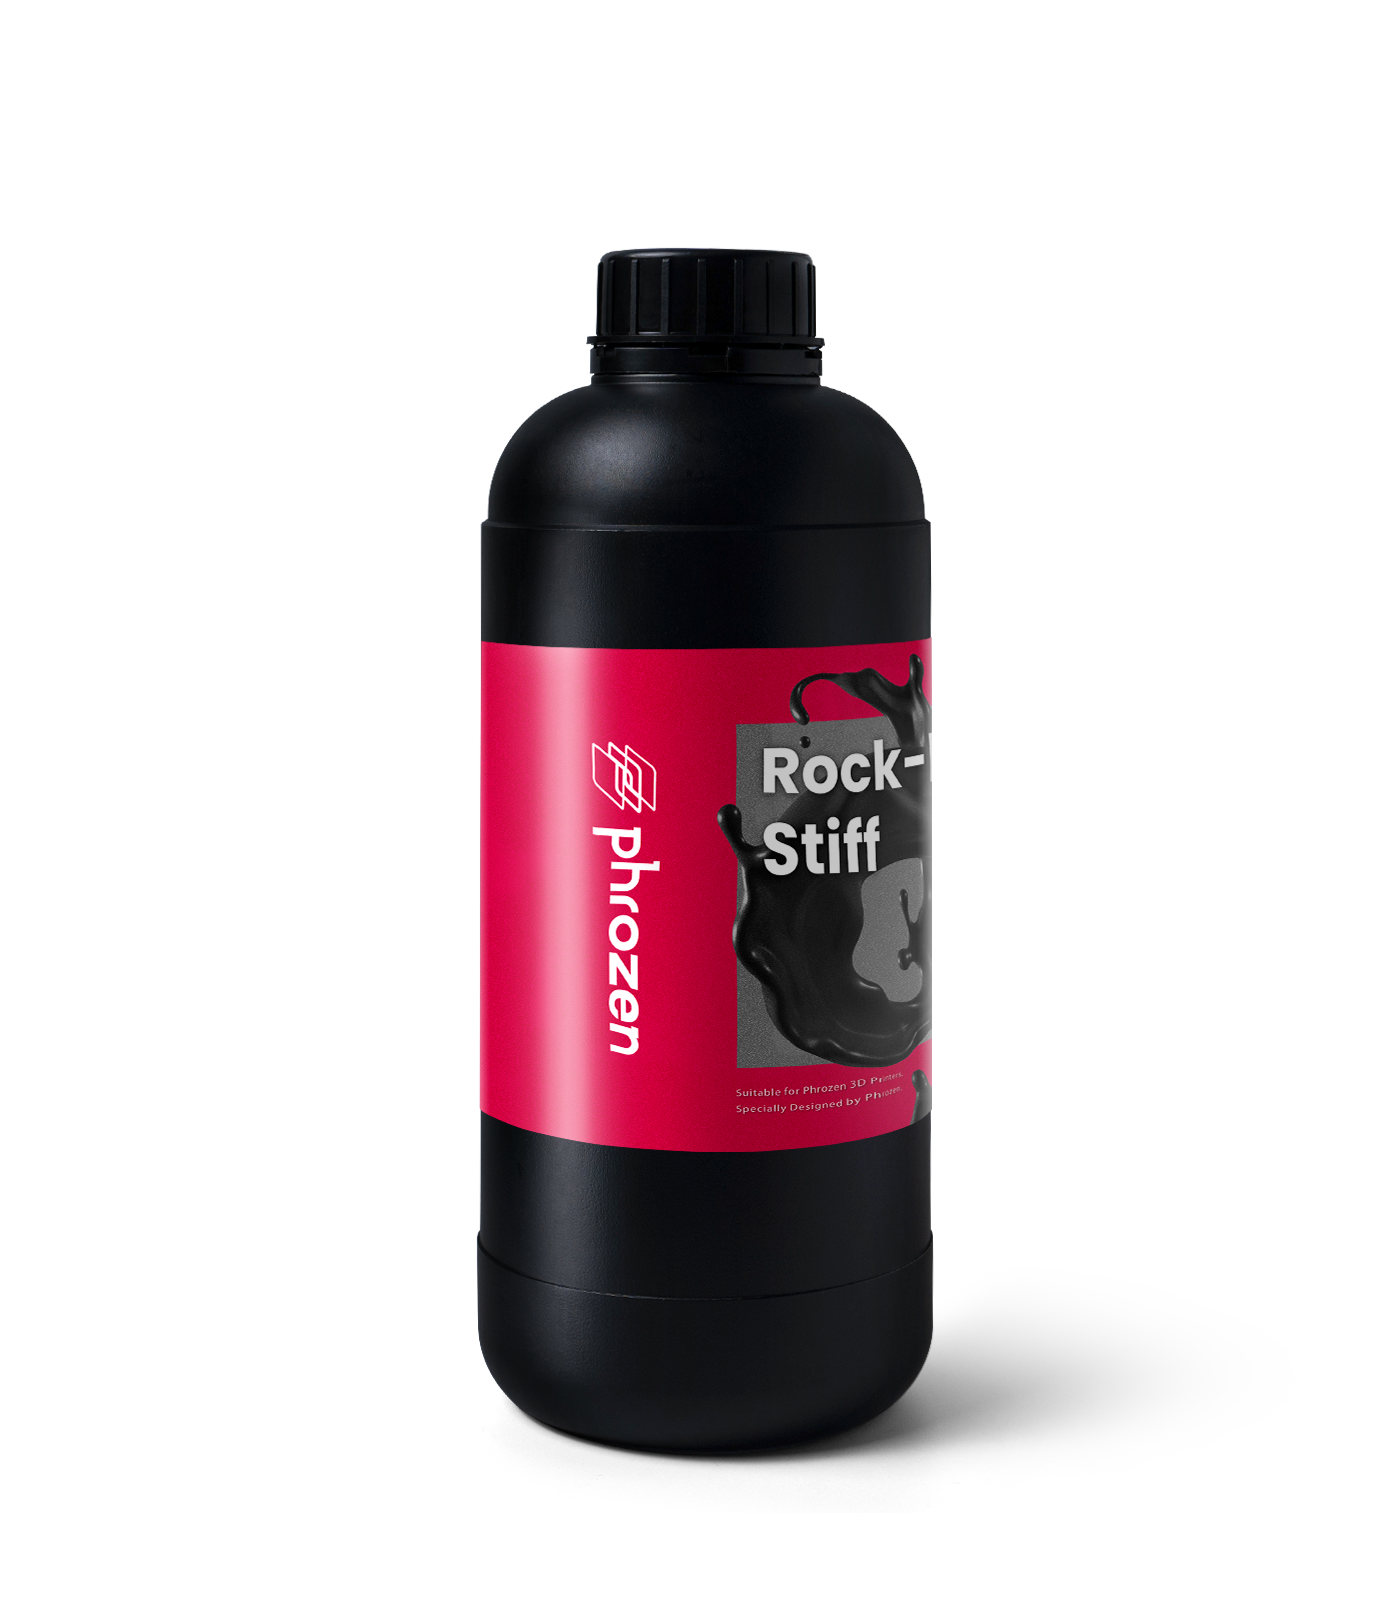 Фотополимер Phrozen Rock-Black Stiff, черный (1 кг)